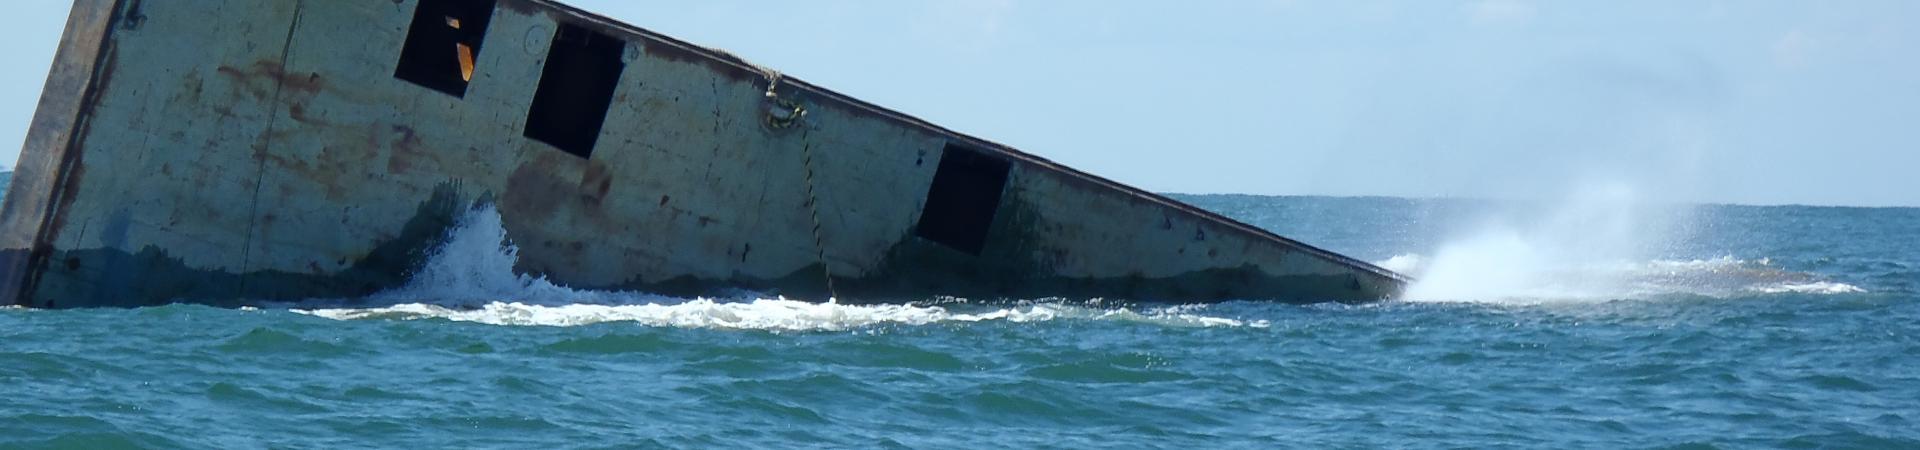 Barge sinking